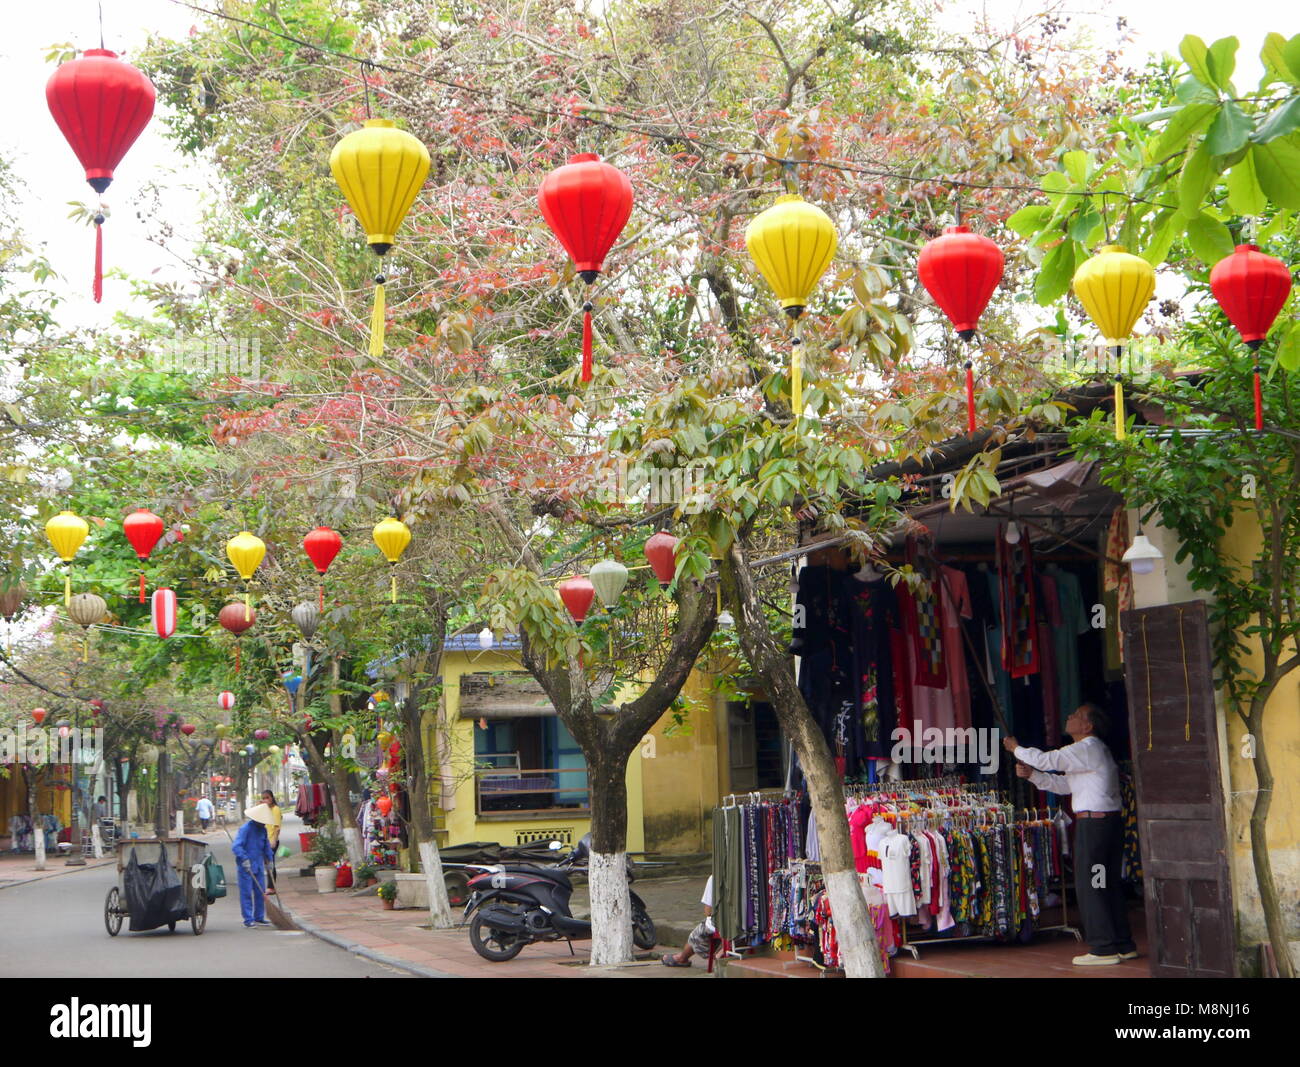 Hoi An, Vietnam - Mars 17, 2018 : tôt le matin calme au centre de la vieille ville de Hoi An Vietnam avec avis de boutiques et les populations locales Banque D'Images